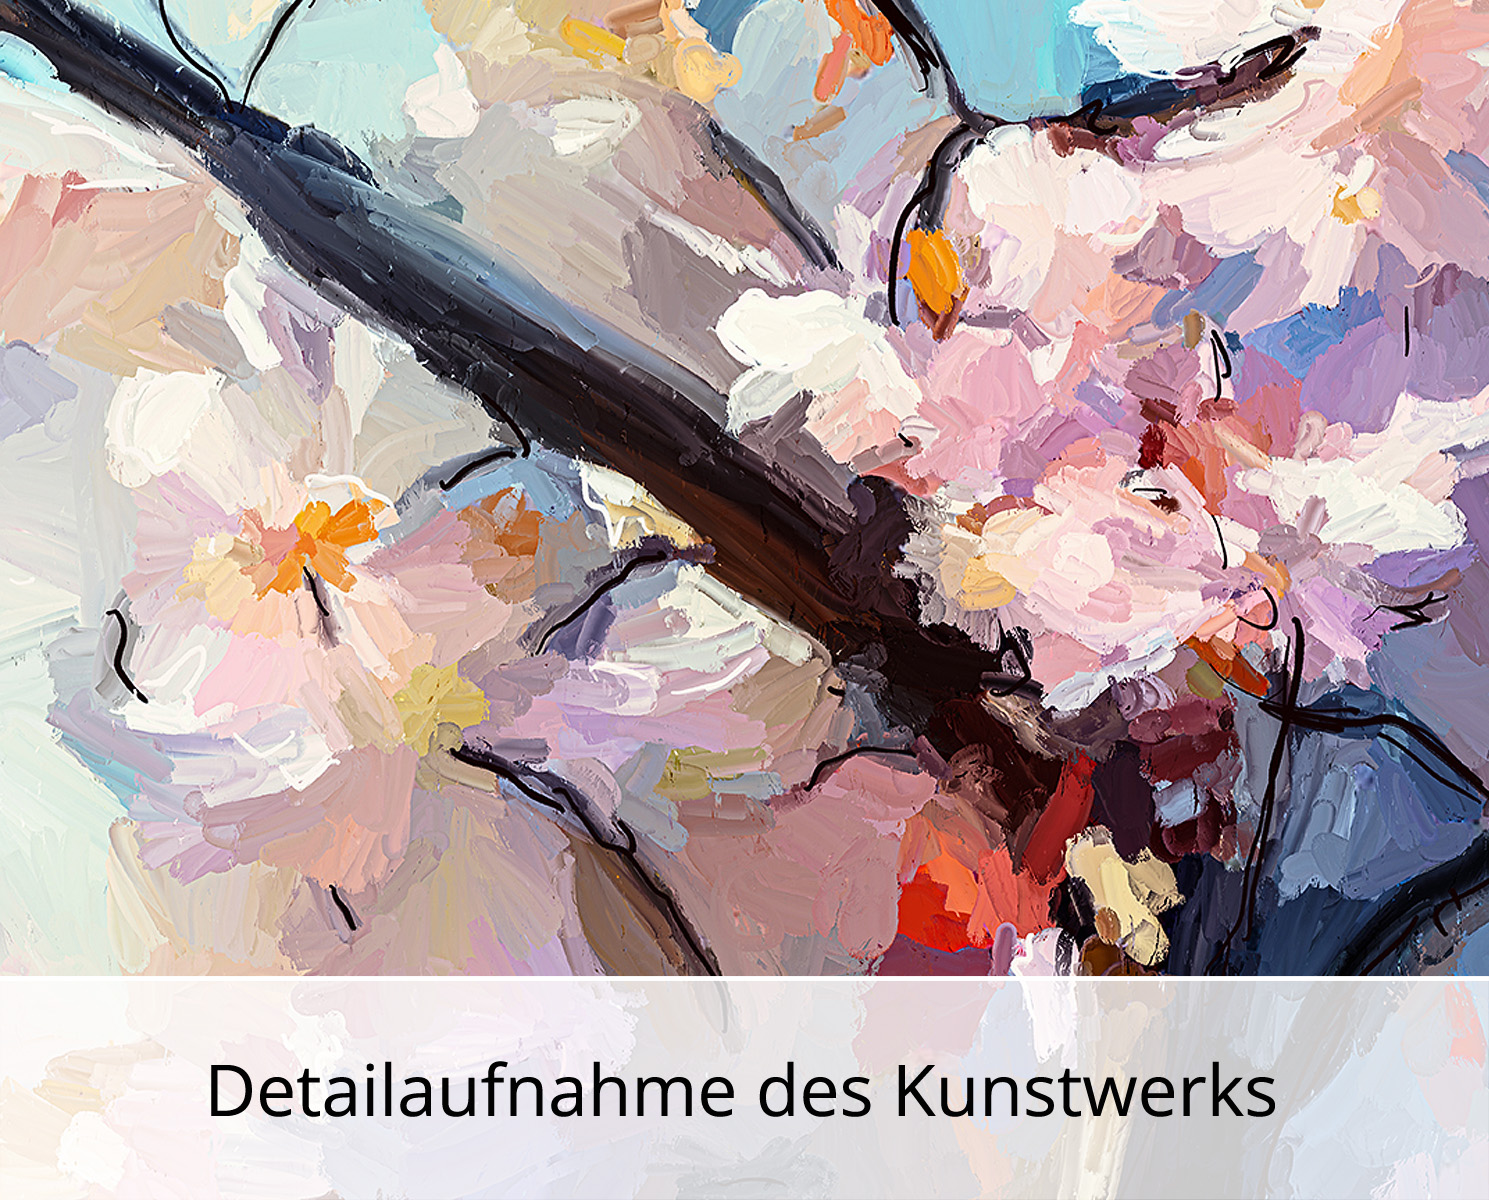 Moderne Pop Art: Kirschblüte, H. Mühlbauer-Gardemin, Original/serielles Unikat